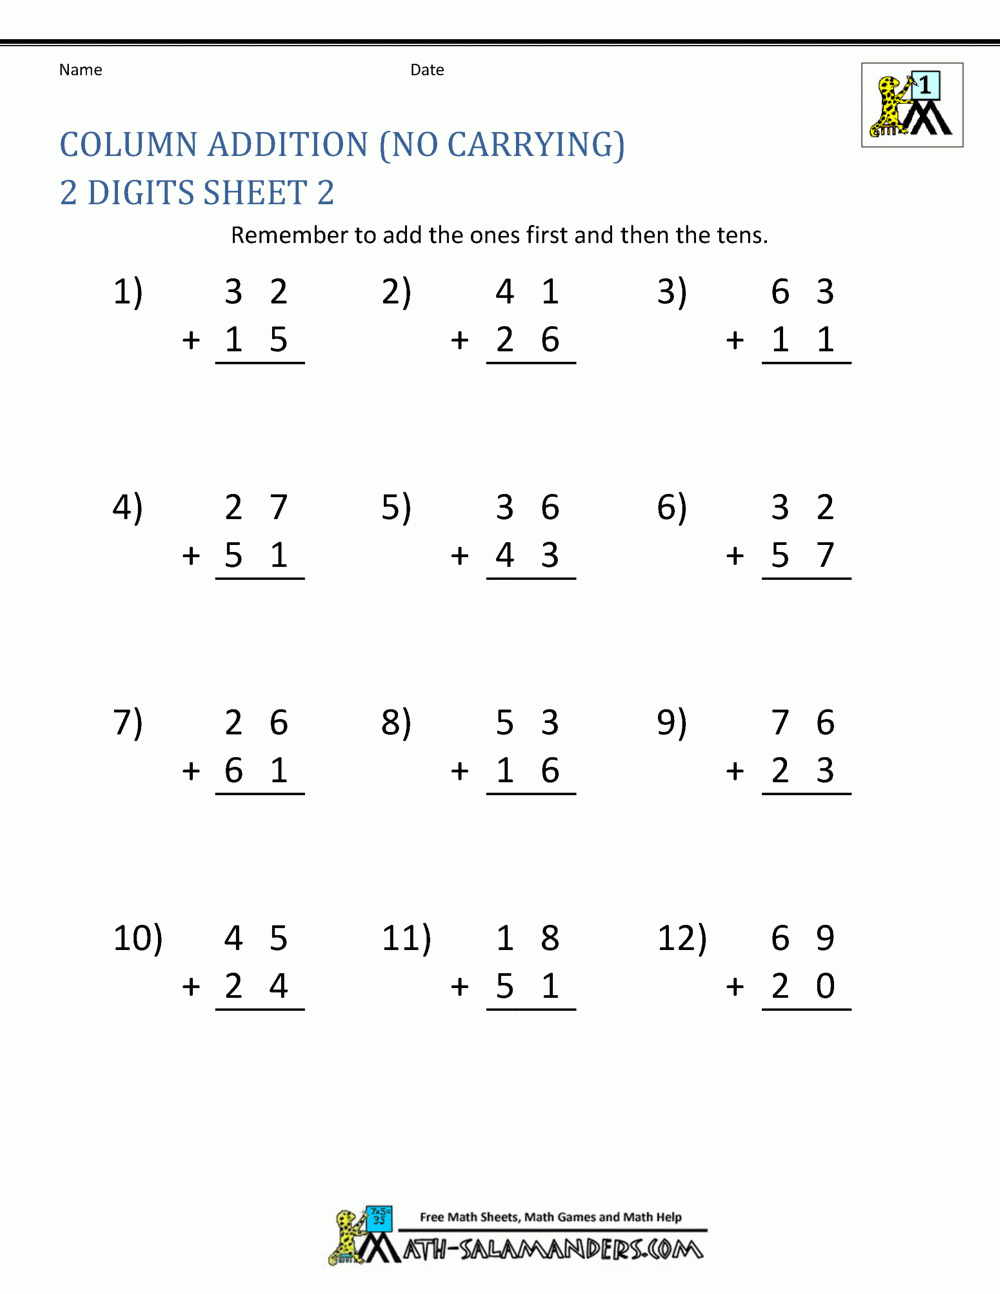 Cbse Ncert Worksheet For Class 1 Maths 1 Grade Worksheets Free Maths